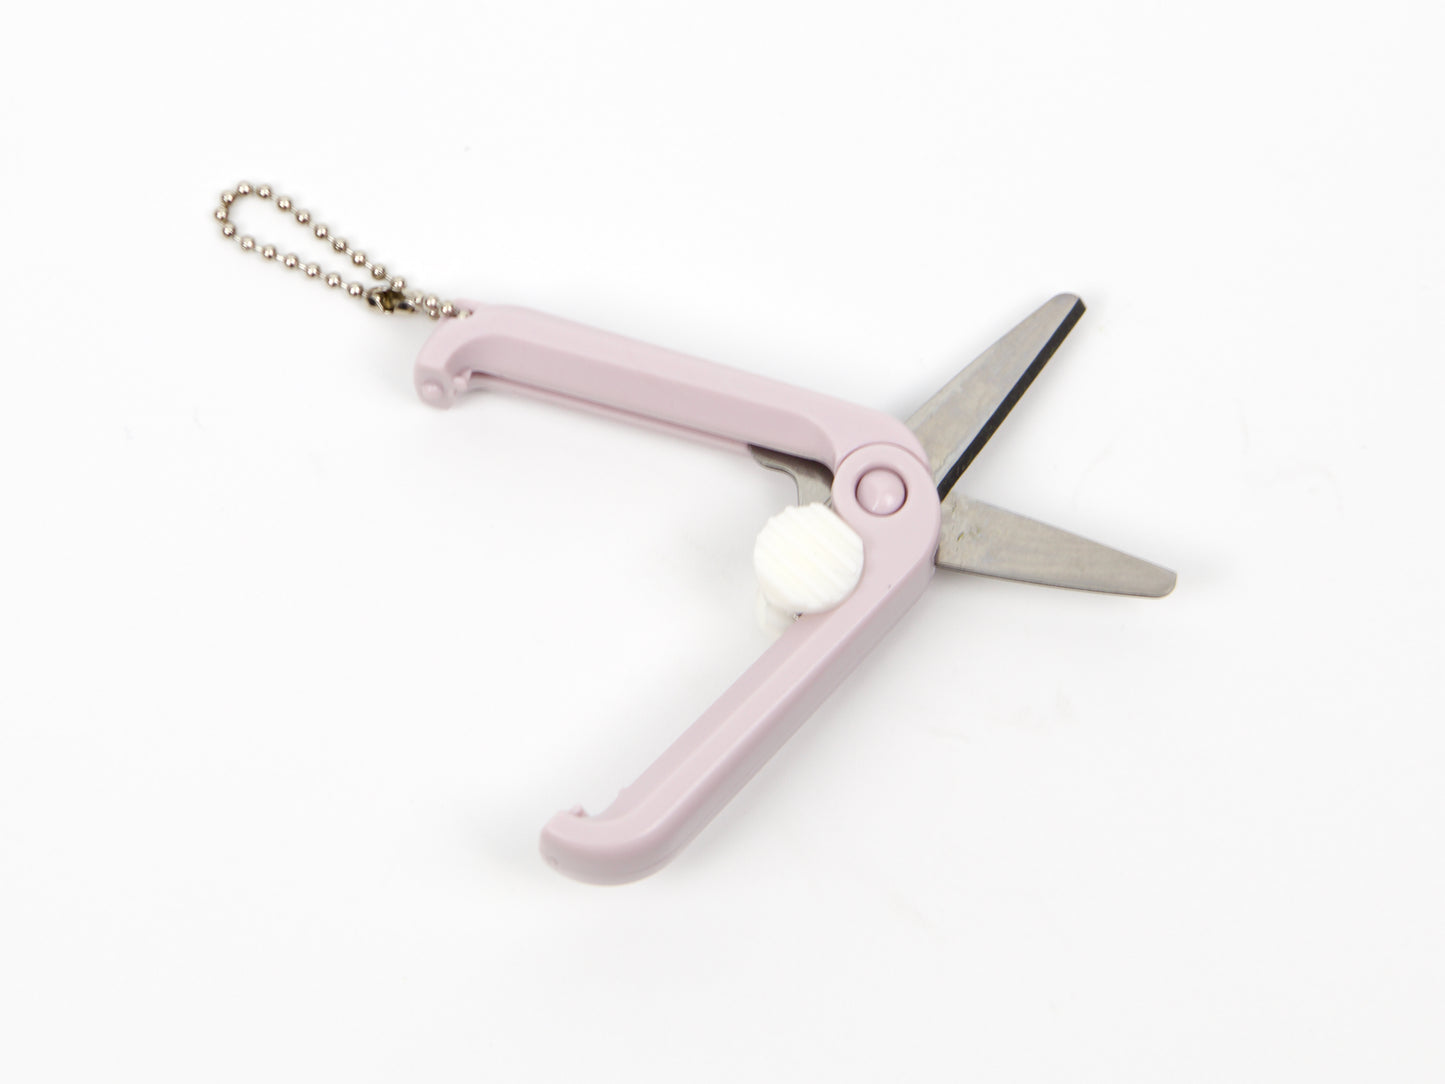 Kutsuwa Mini Scissors